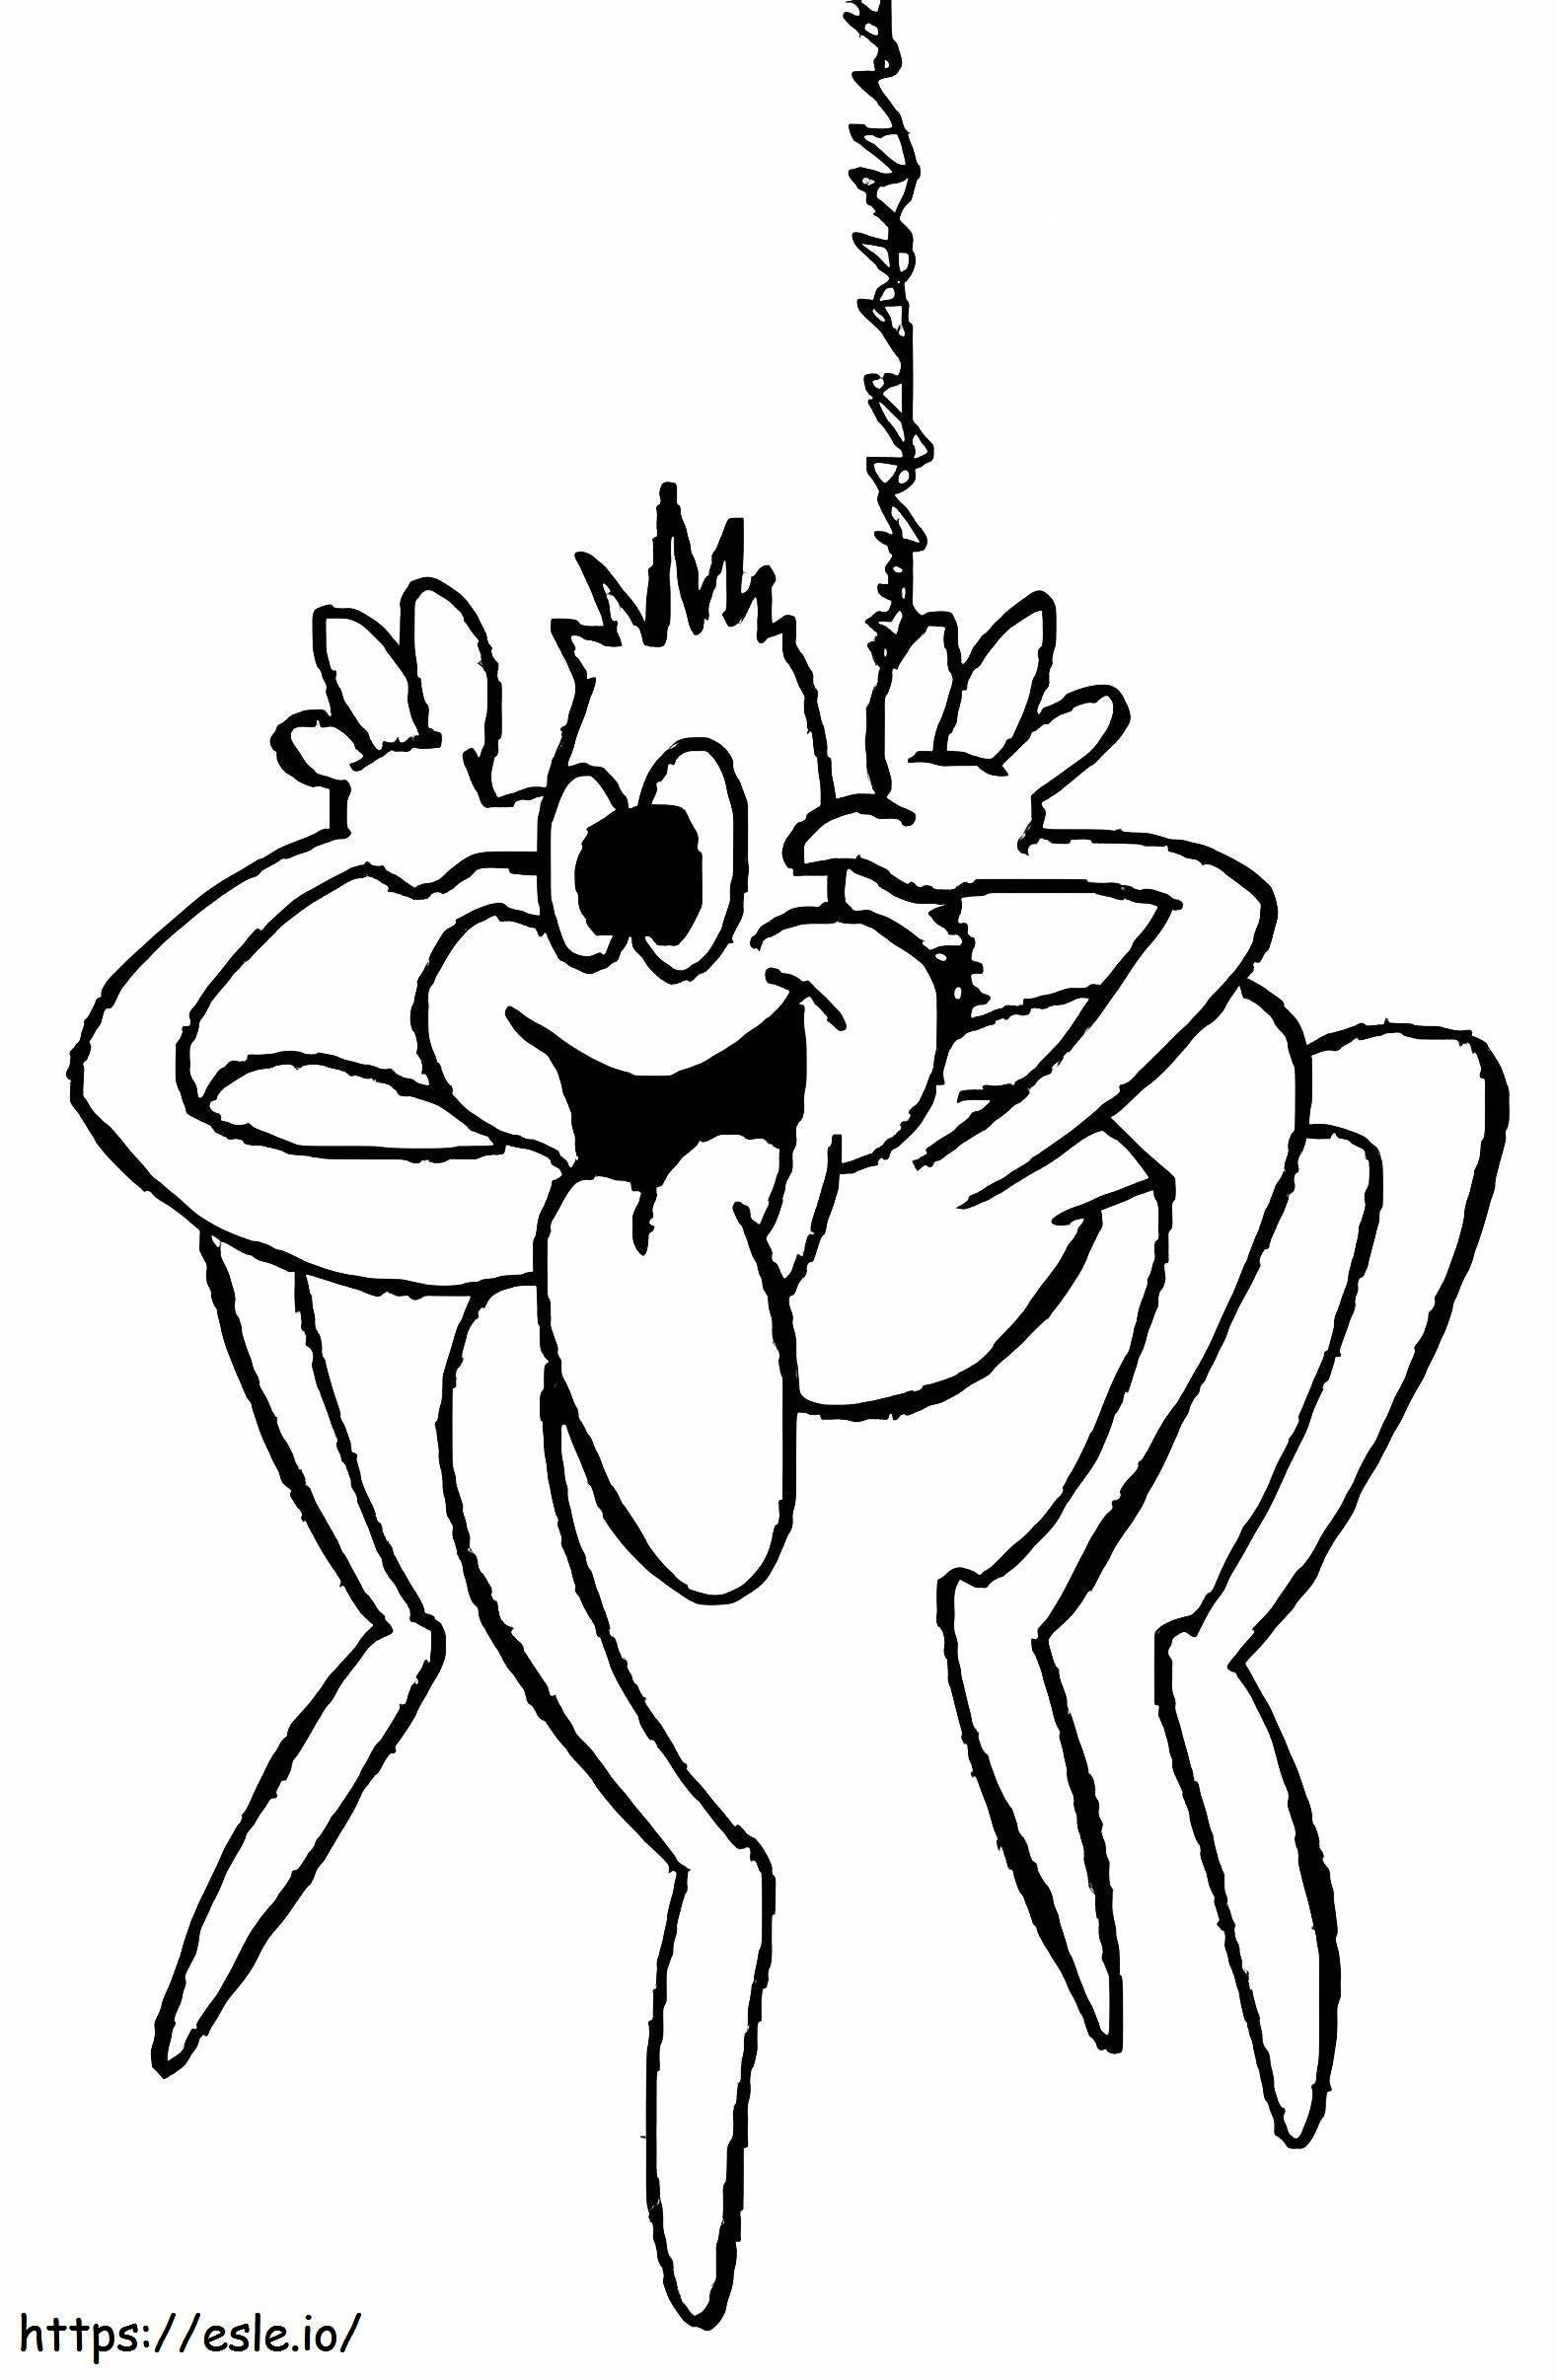 Aranha de desenho animado engraçado para colorir